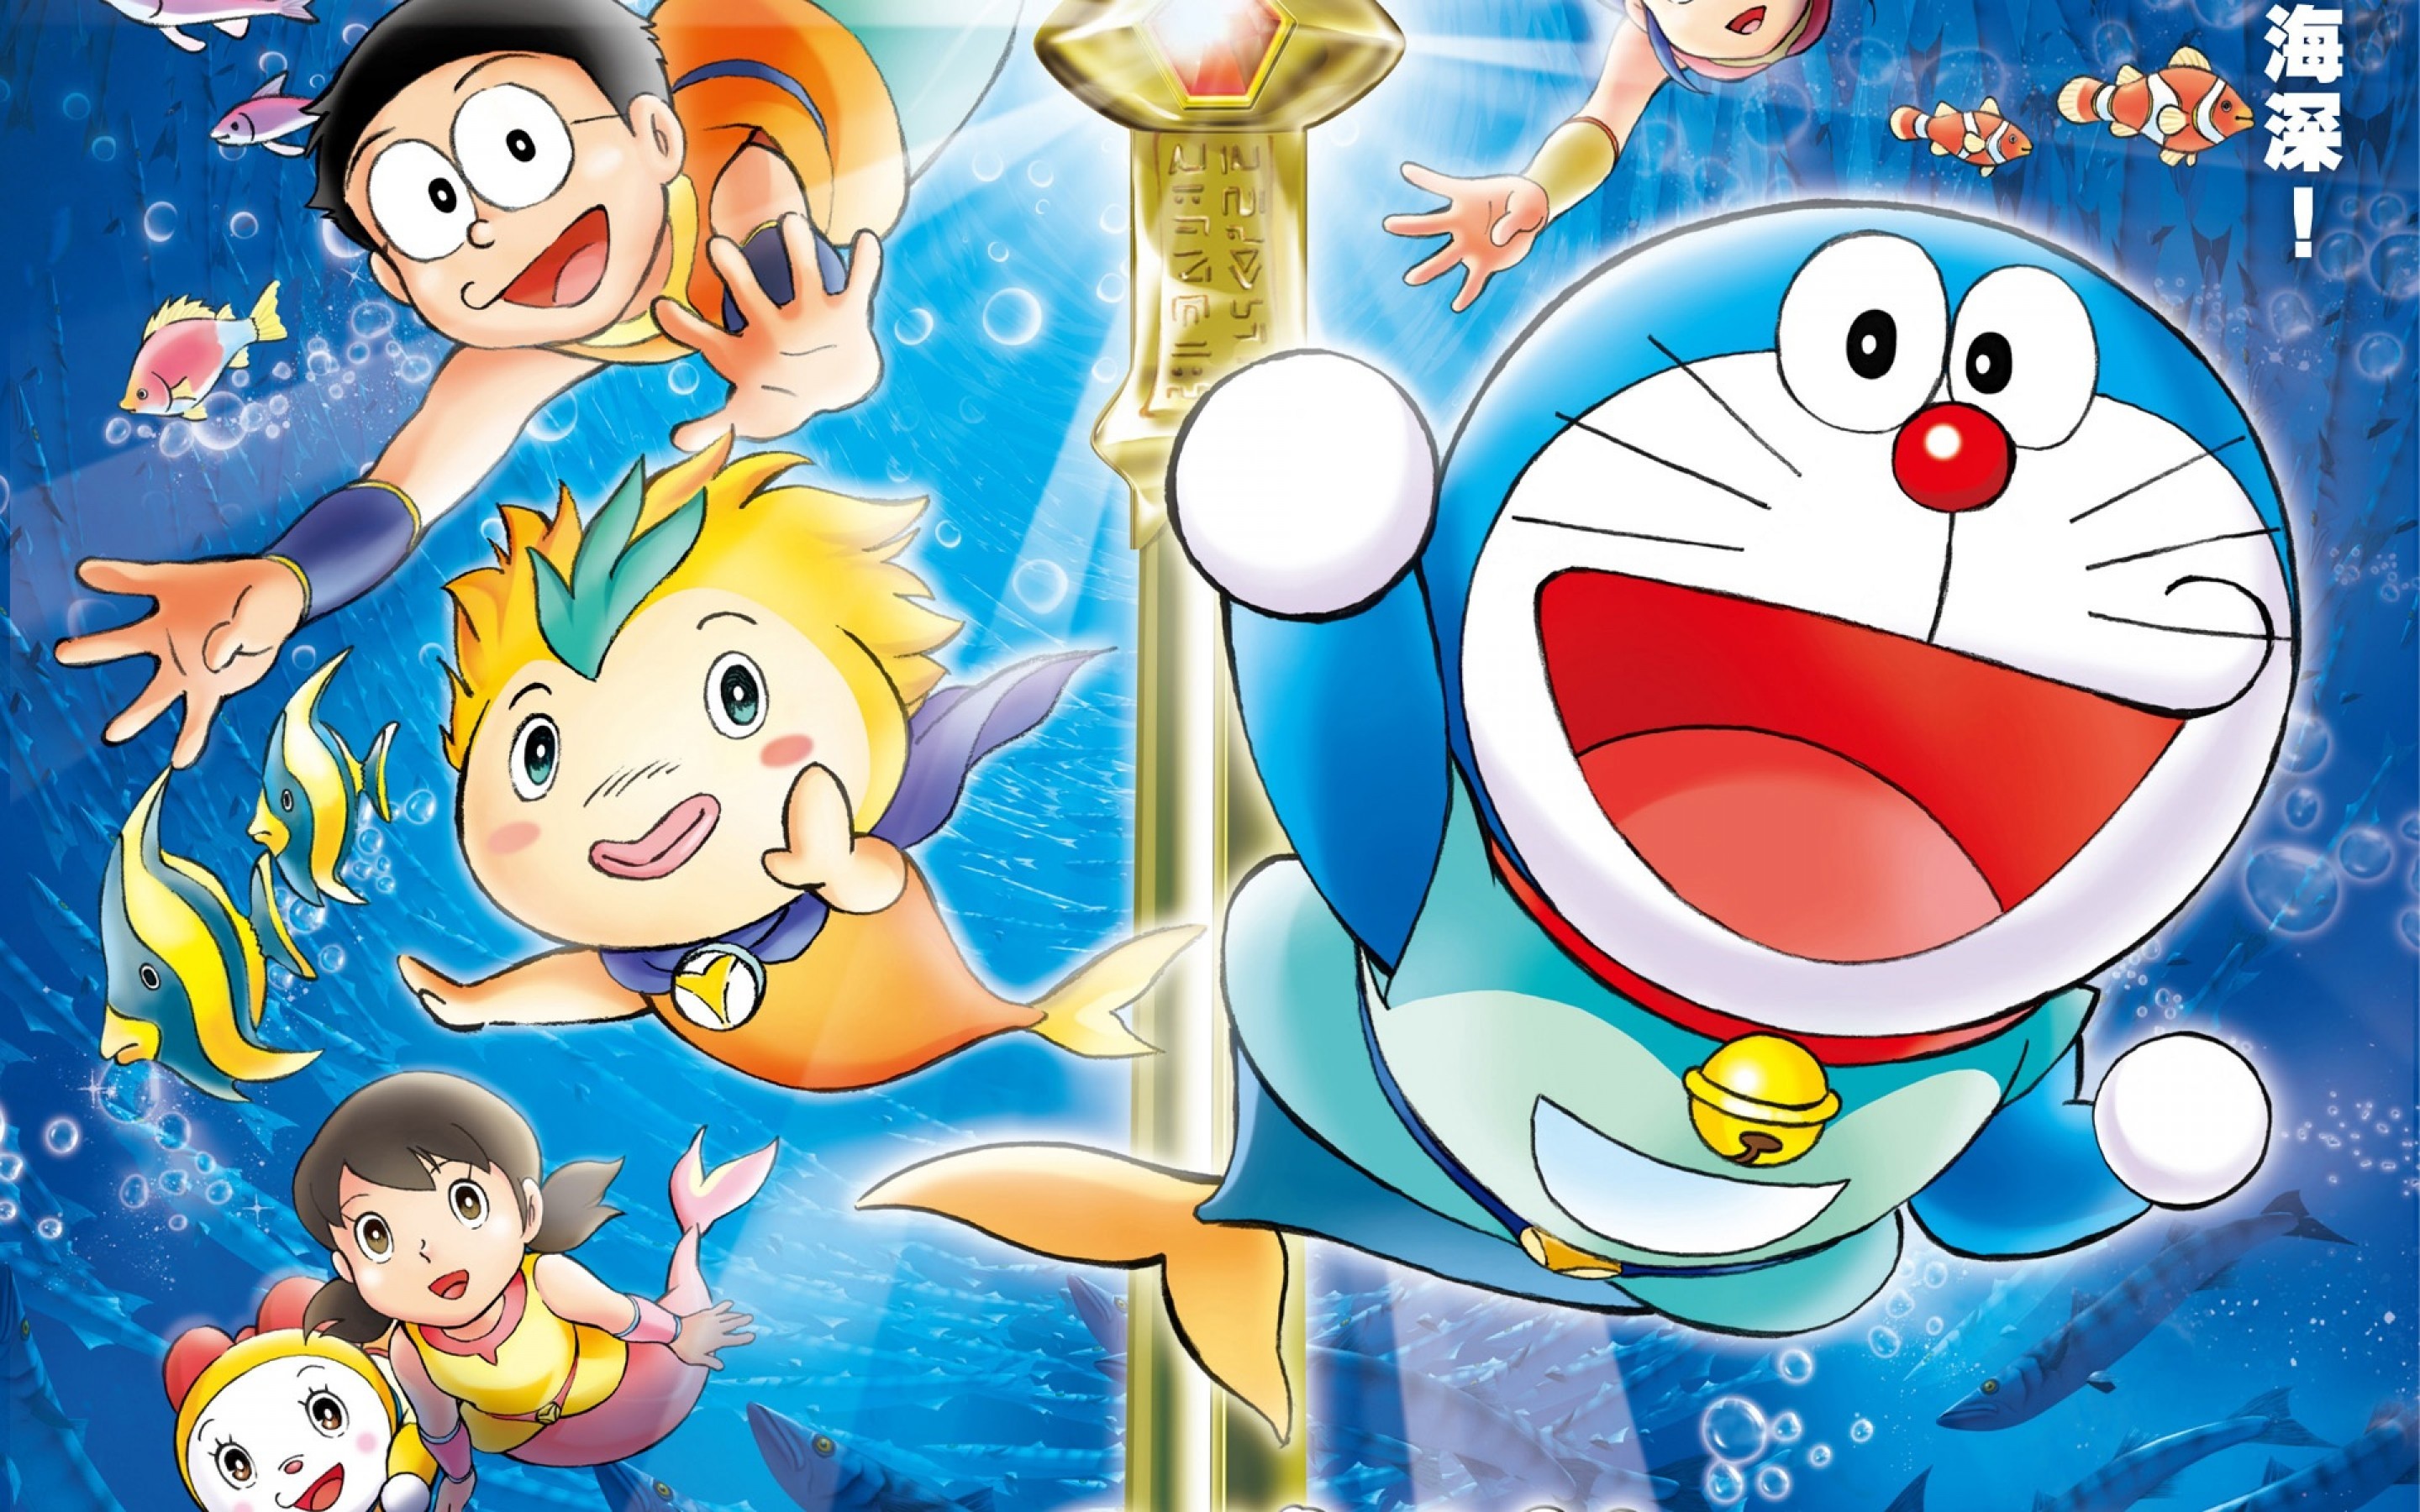 Doraemon: Bạn yêu thích chú mèo máy đáng yêu Doraemon chứ? Hãy đến và khám phá thế giới phiêu lưu cùng các nhân vật trong bộ truyện tranh dành cho trẻ em này nhé!